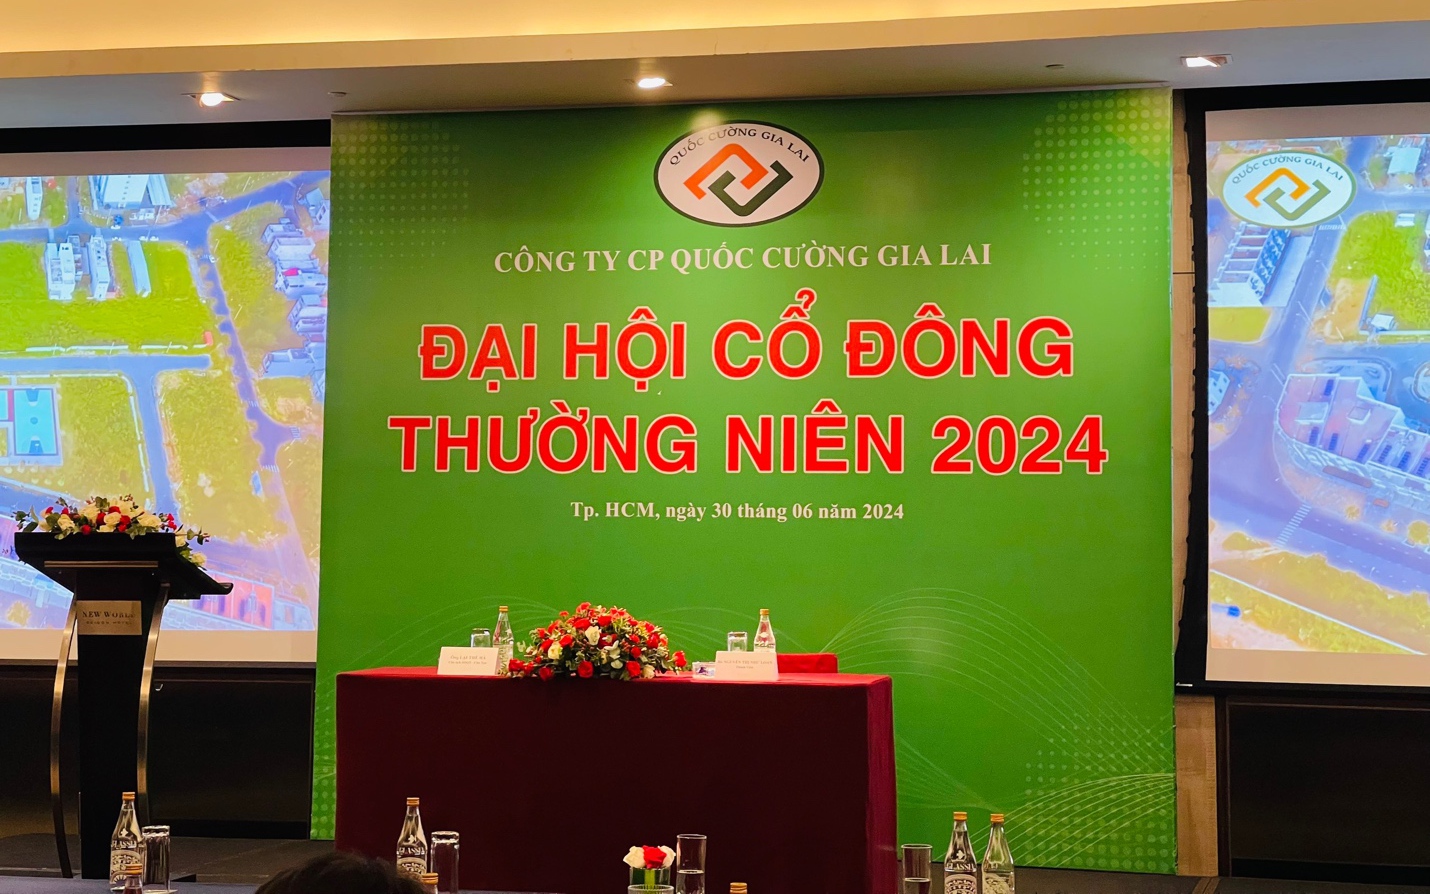 Bà Nguyễn Thị Như Loan gặp vấn đề sức khoẻ, Đại hội lần 1 của Quốc Cường Gia Lai (QCG) bất thành